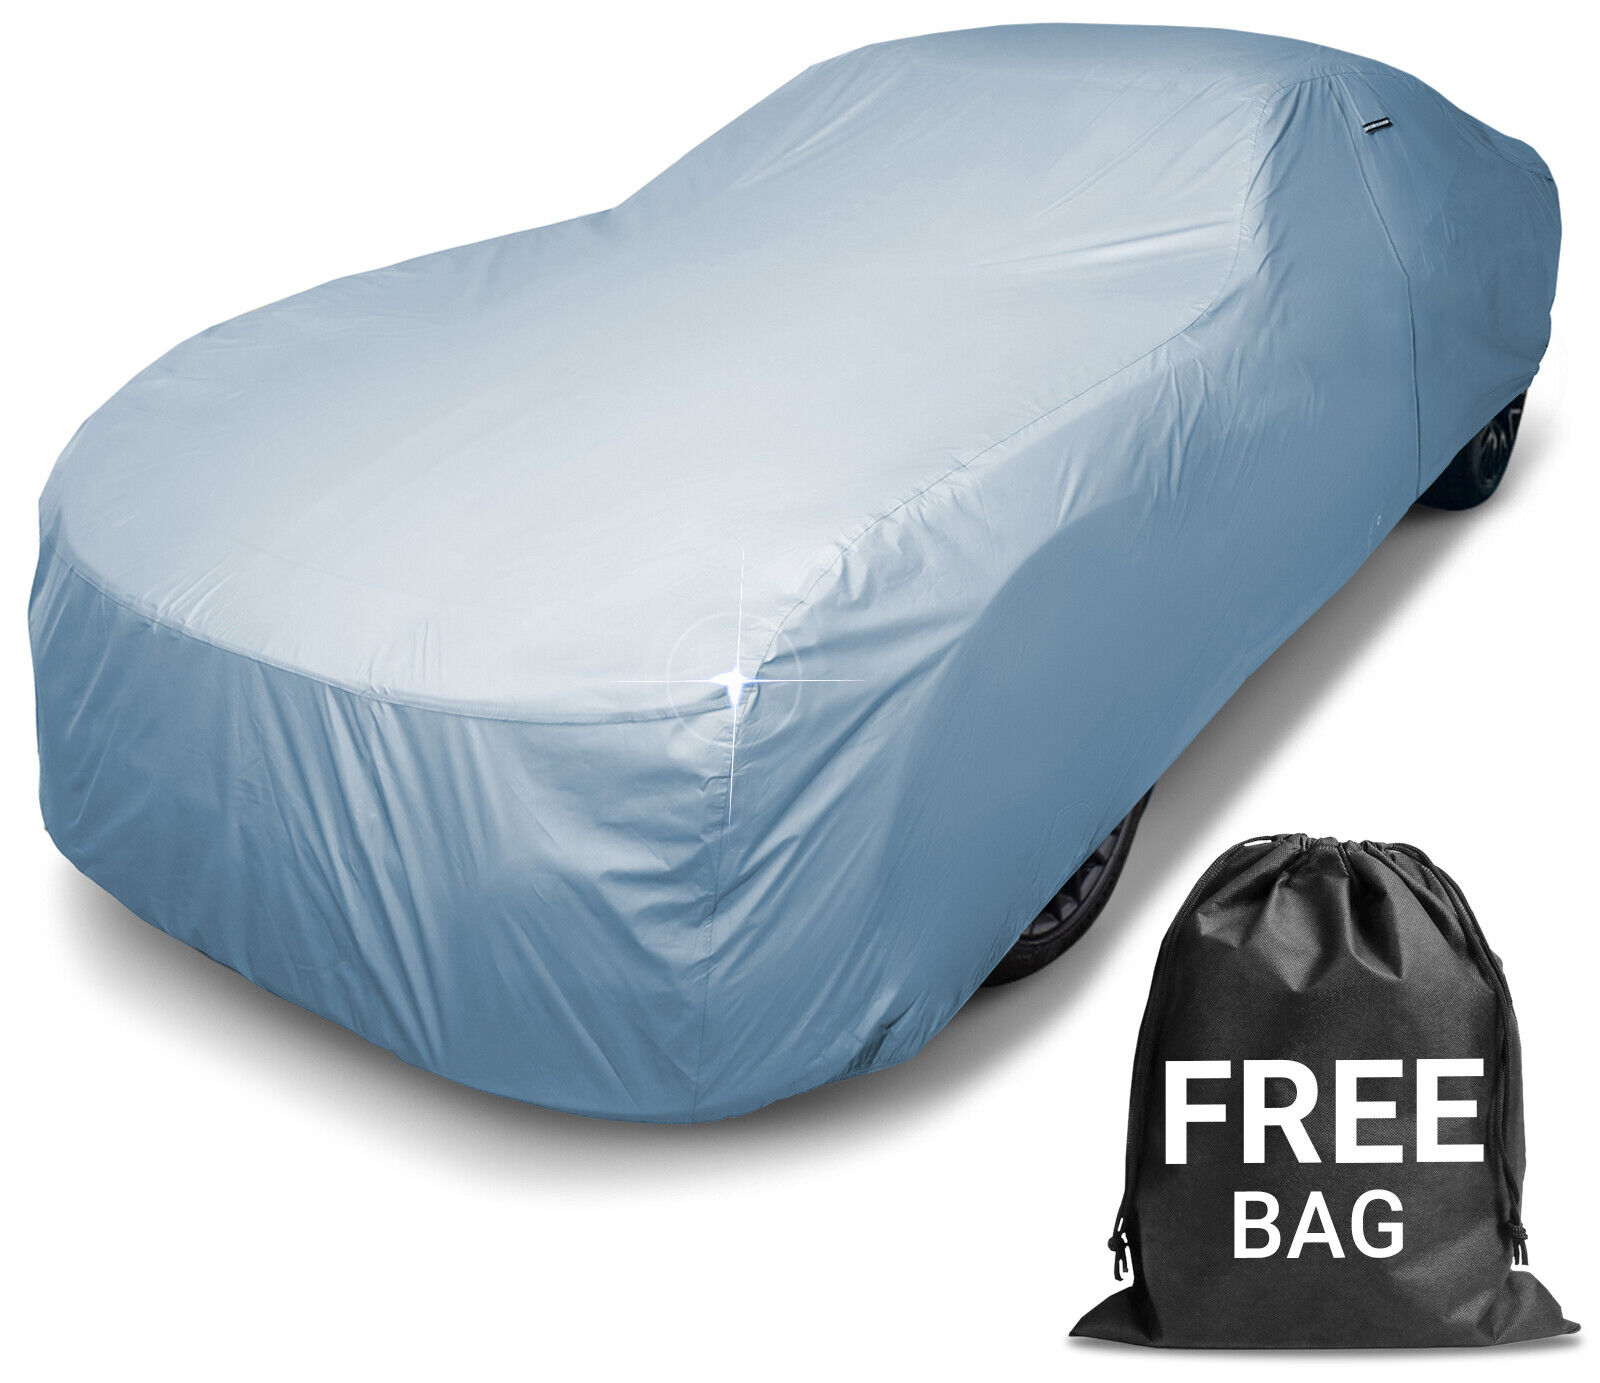 PORSCHE [CARRERA GT] Premium Custom-Fit Outdoor Waterproof Car Cover